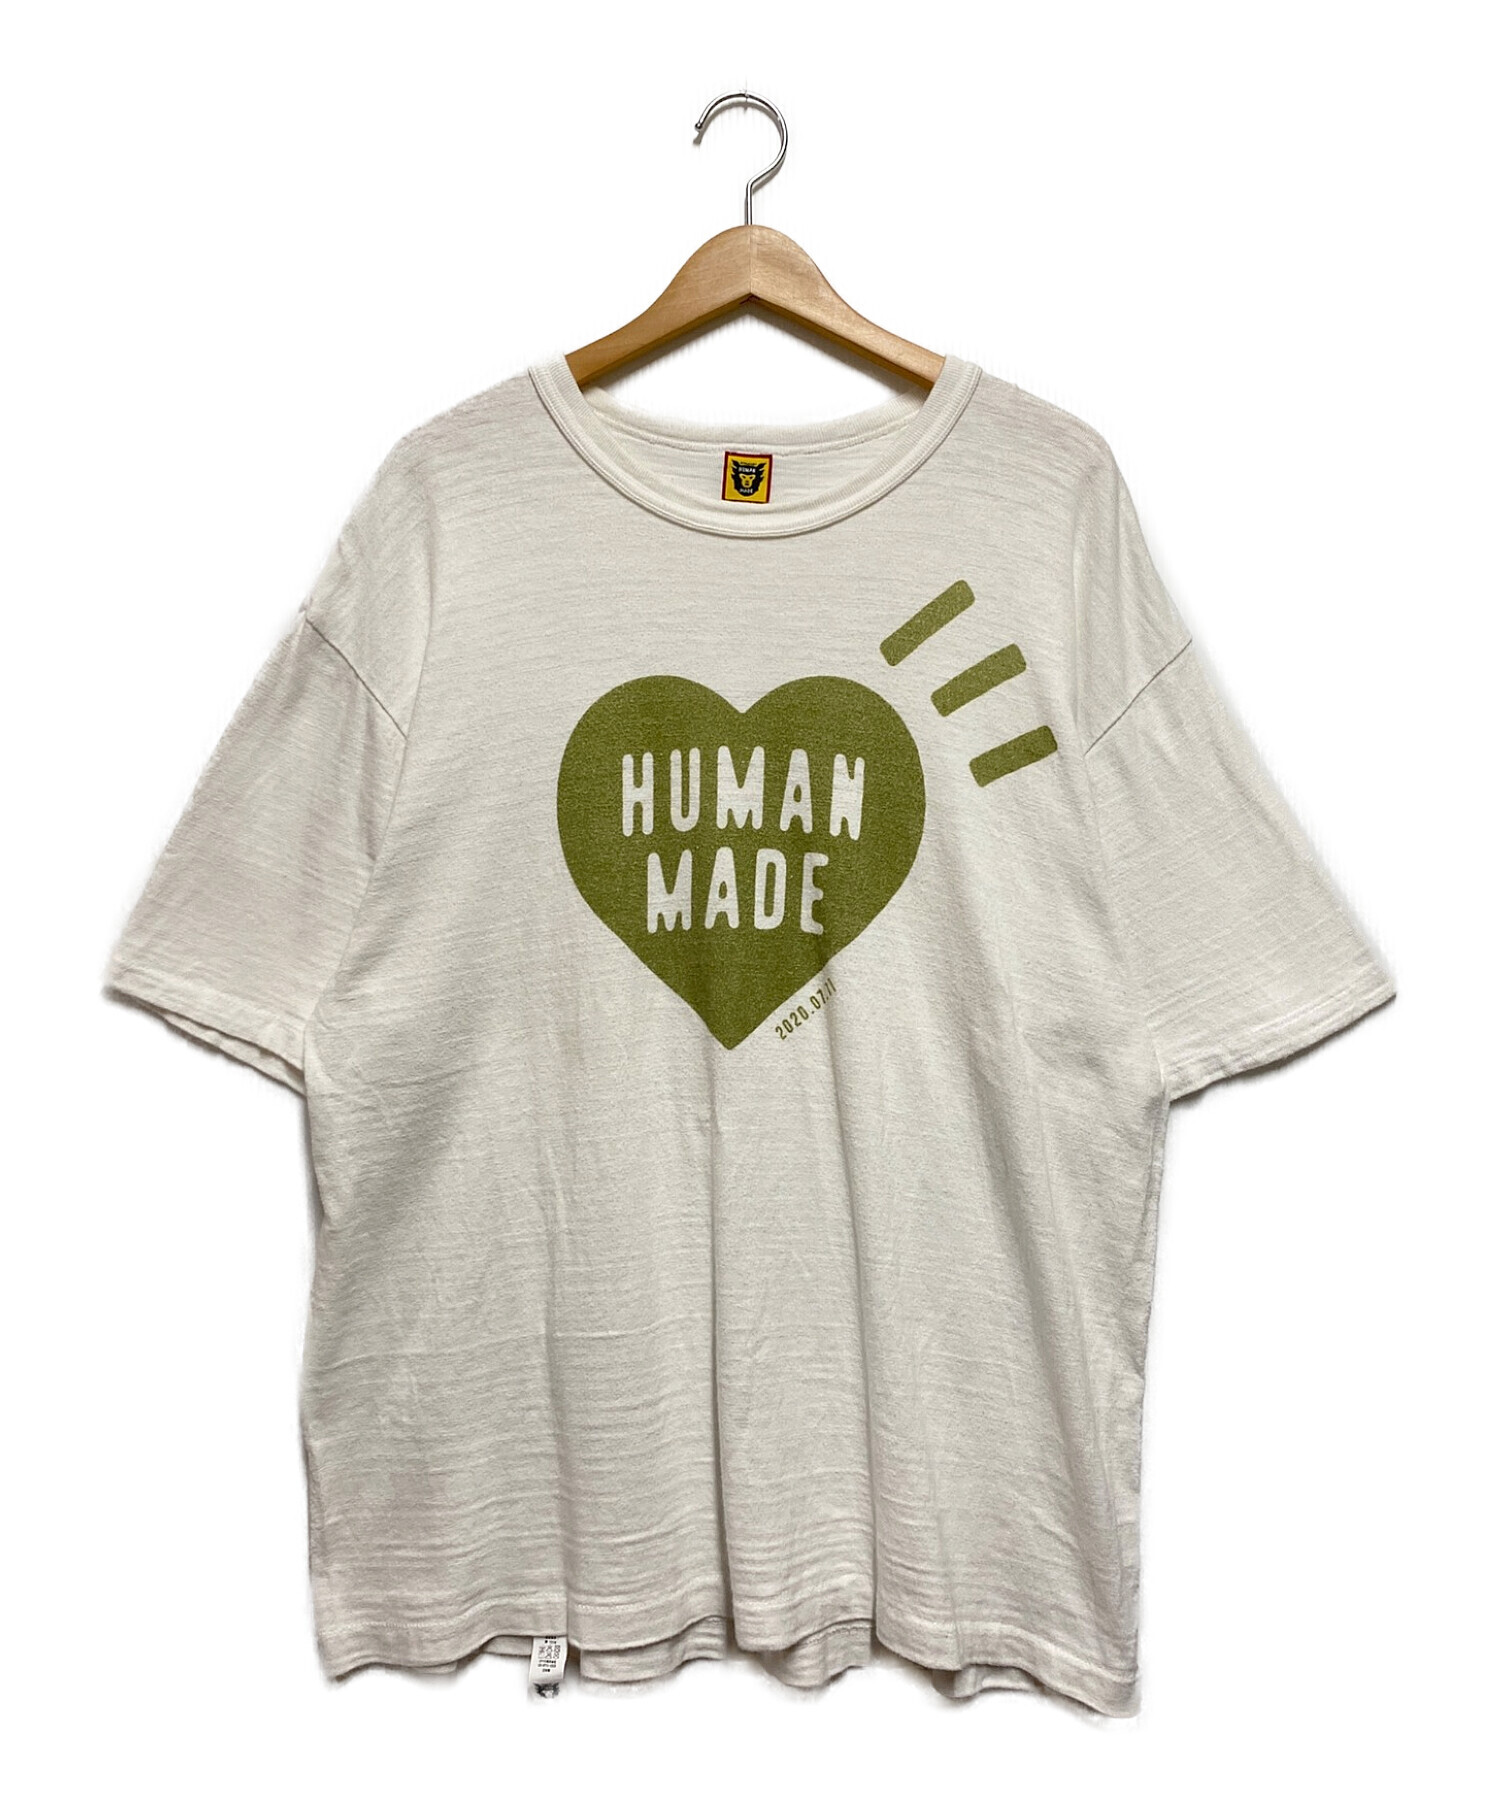 HUMAN MADEハートロゴシャツ